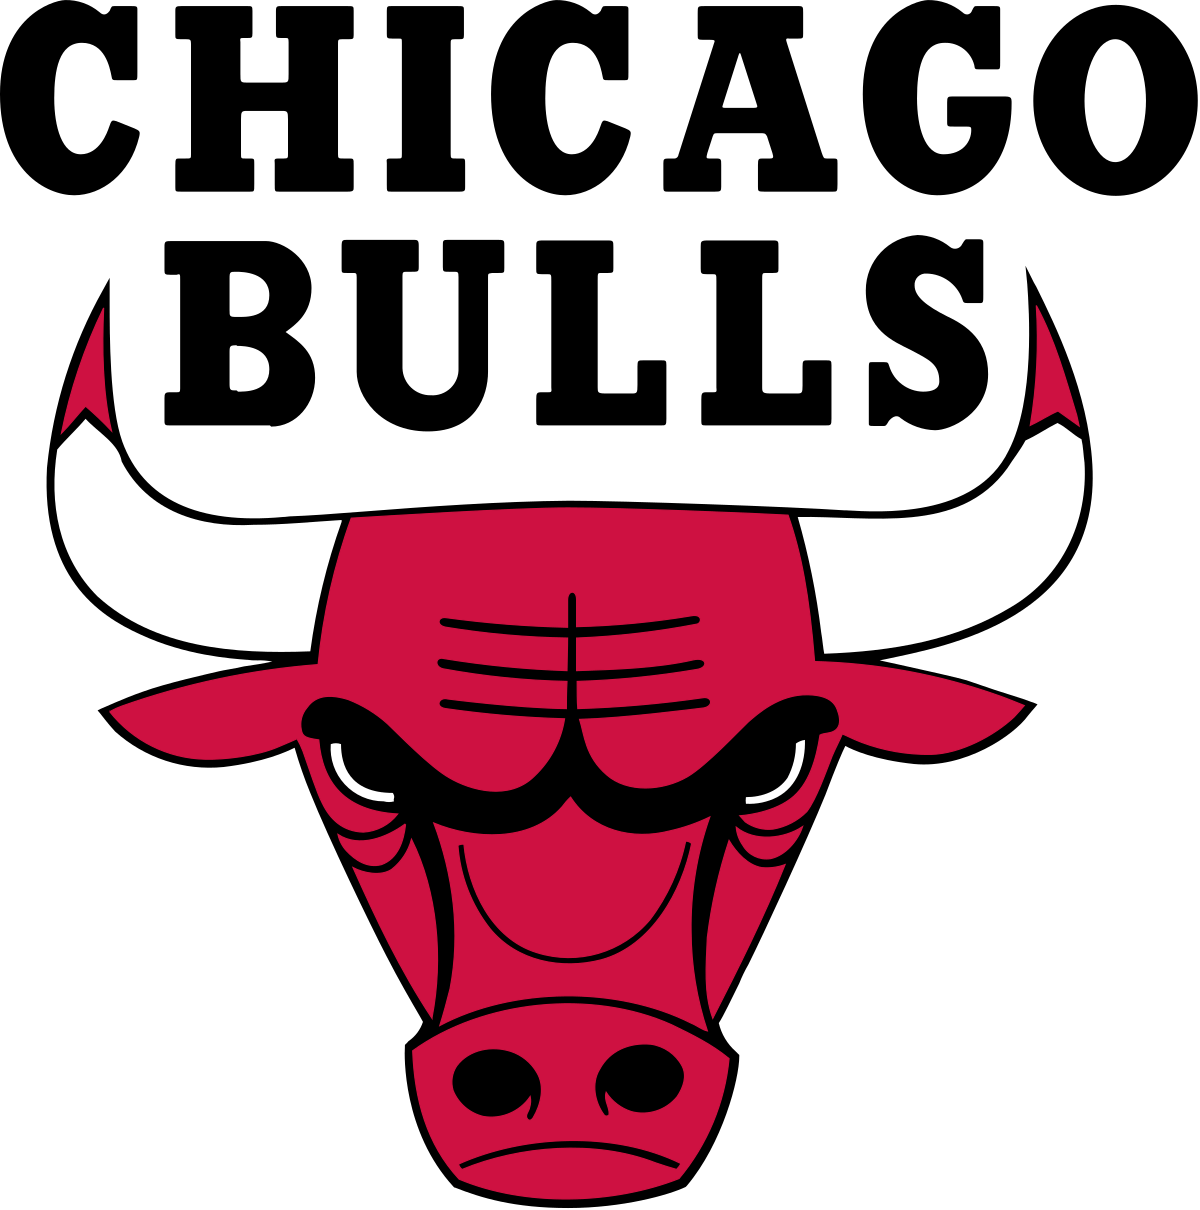 Red and Black Bull Logo - Chicago Bulls